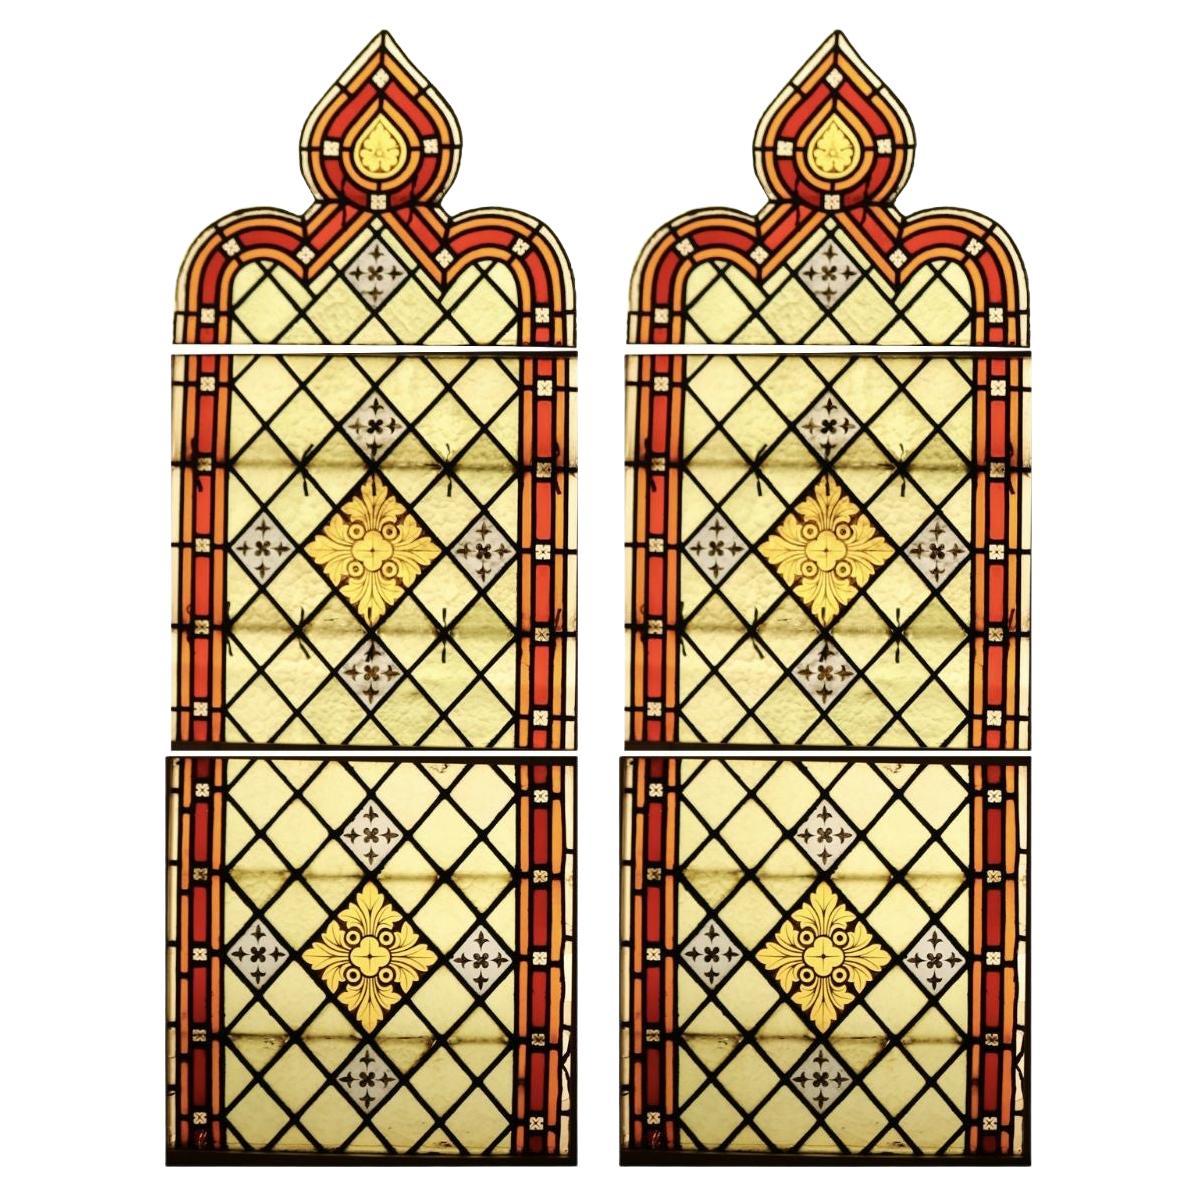 Zwei große restaurierte Kirchenfenster aus Buntglas